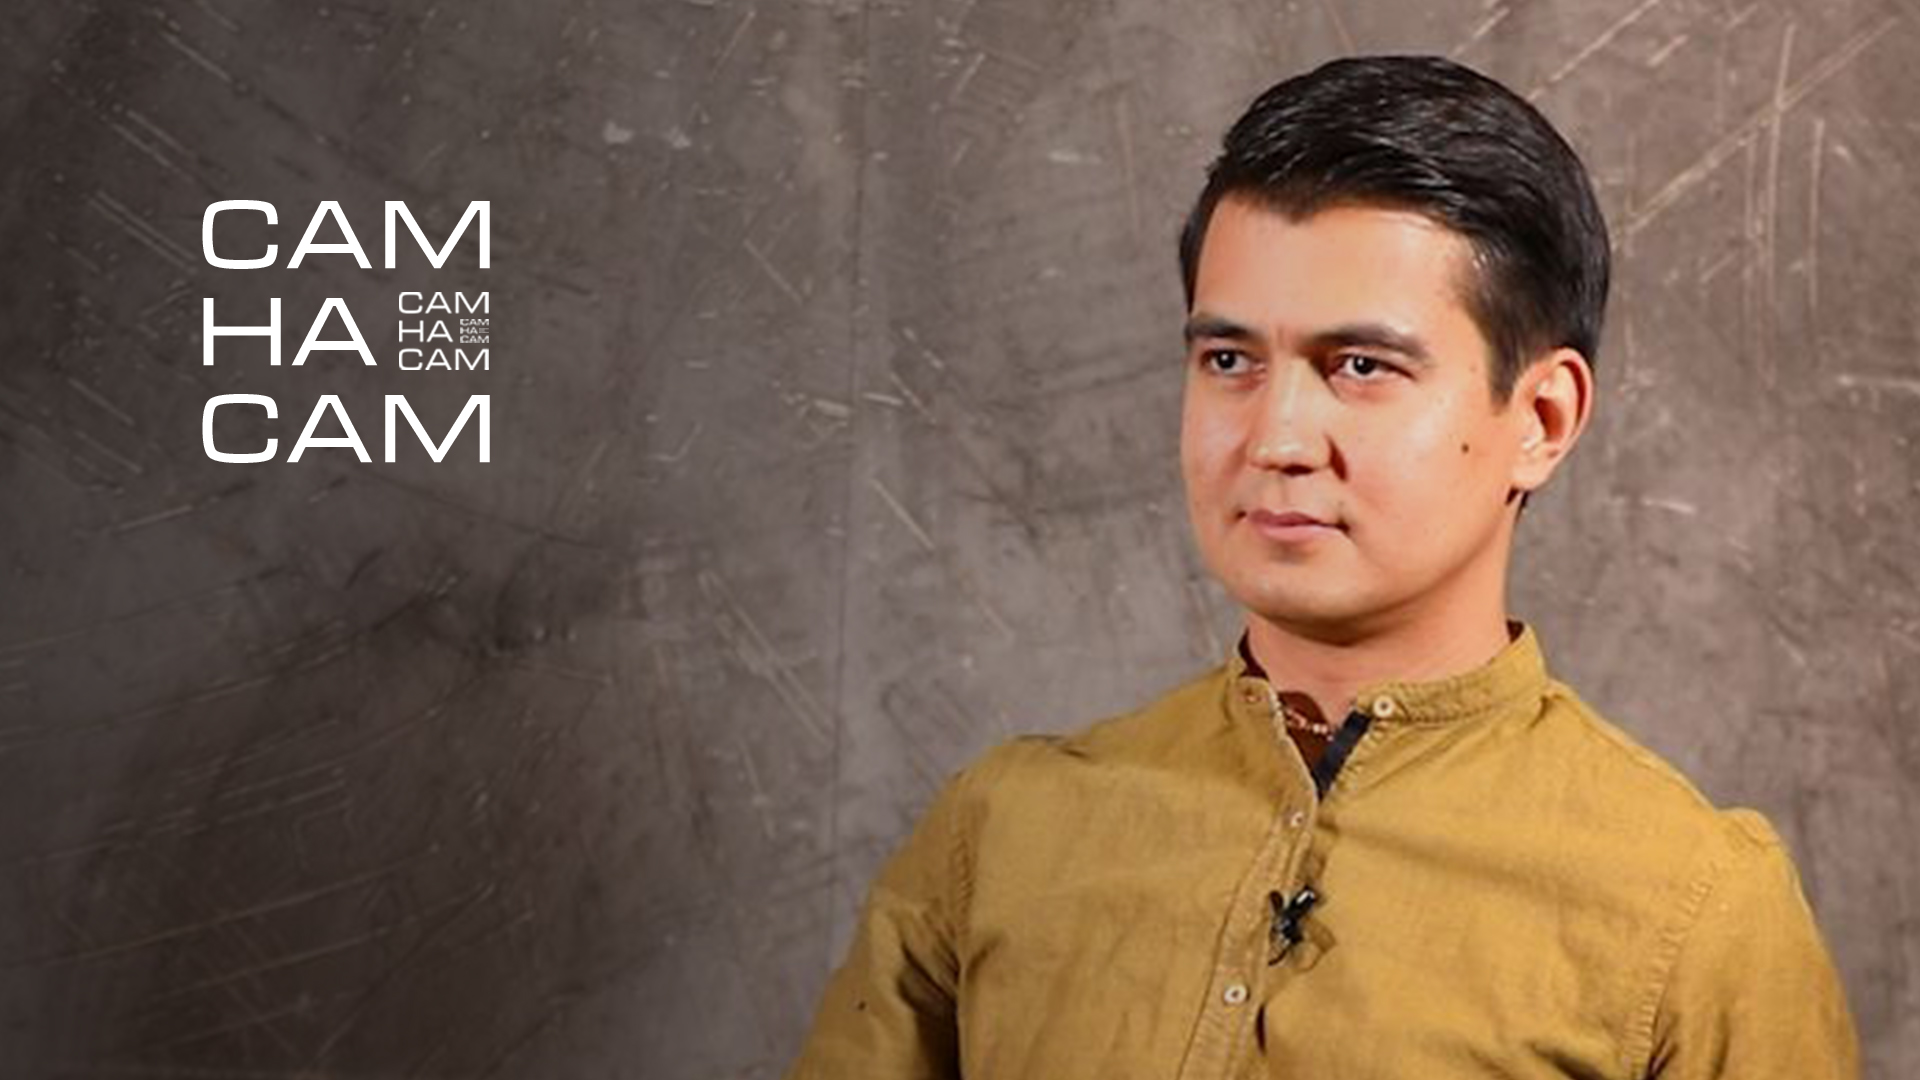 «САМ НА САМ»: музыкант Саидмурат Муратов указал на проблемы узбекского образования и рассказал, как нам стать культурнее — интервью